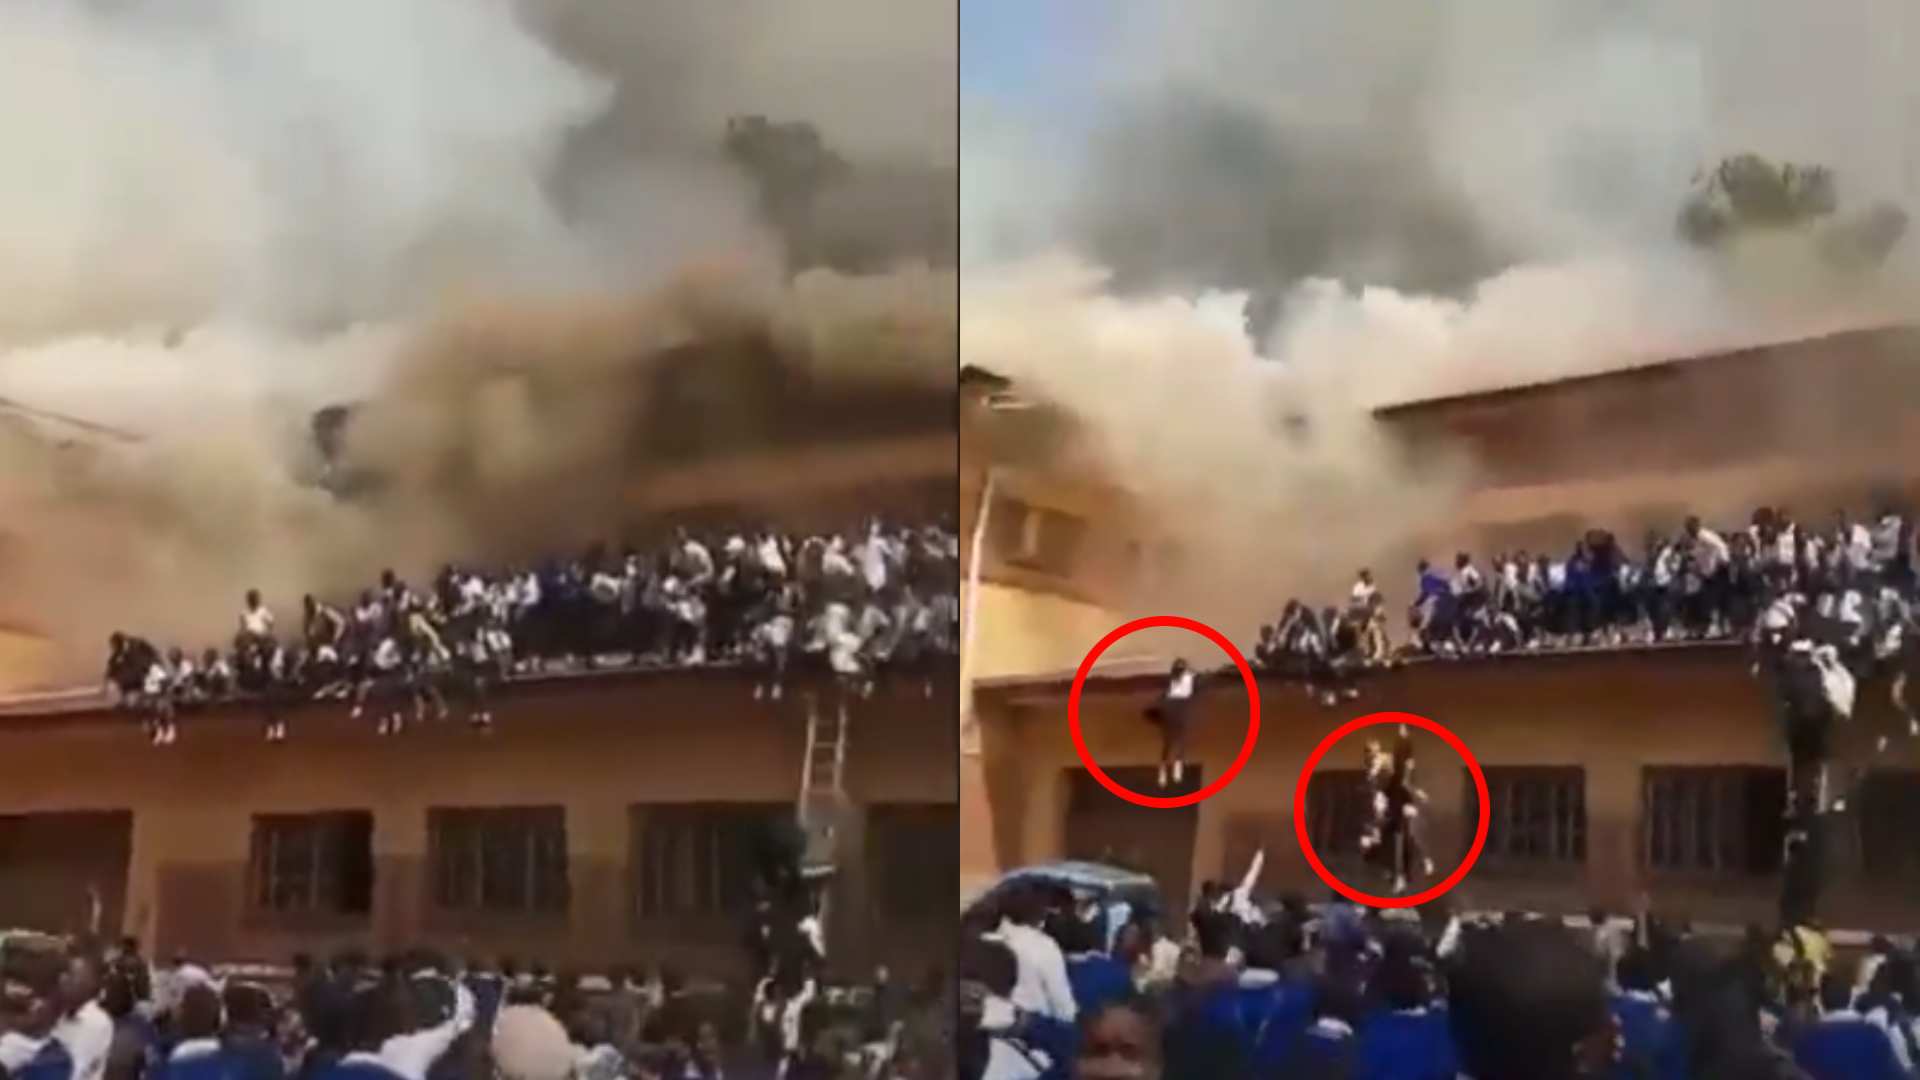 niñas se tiran al vacío por incendio en escuela